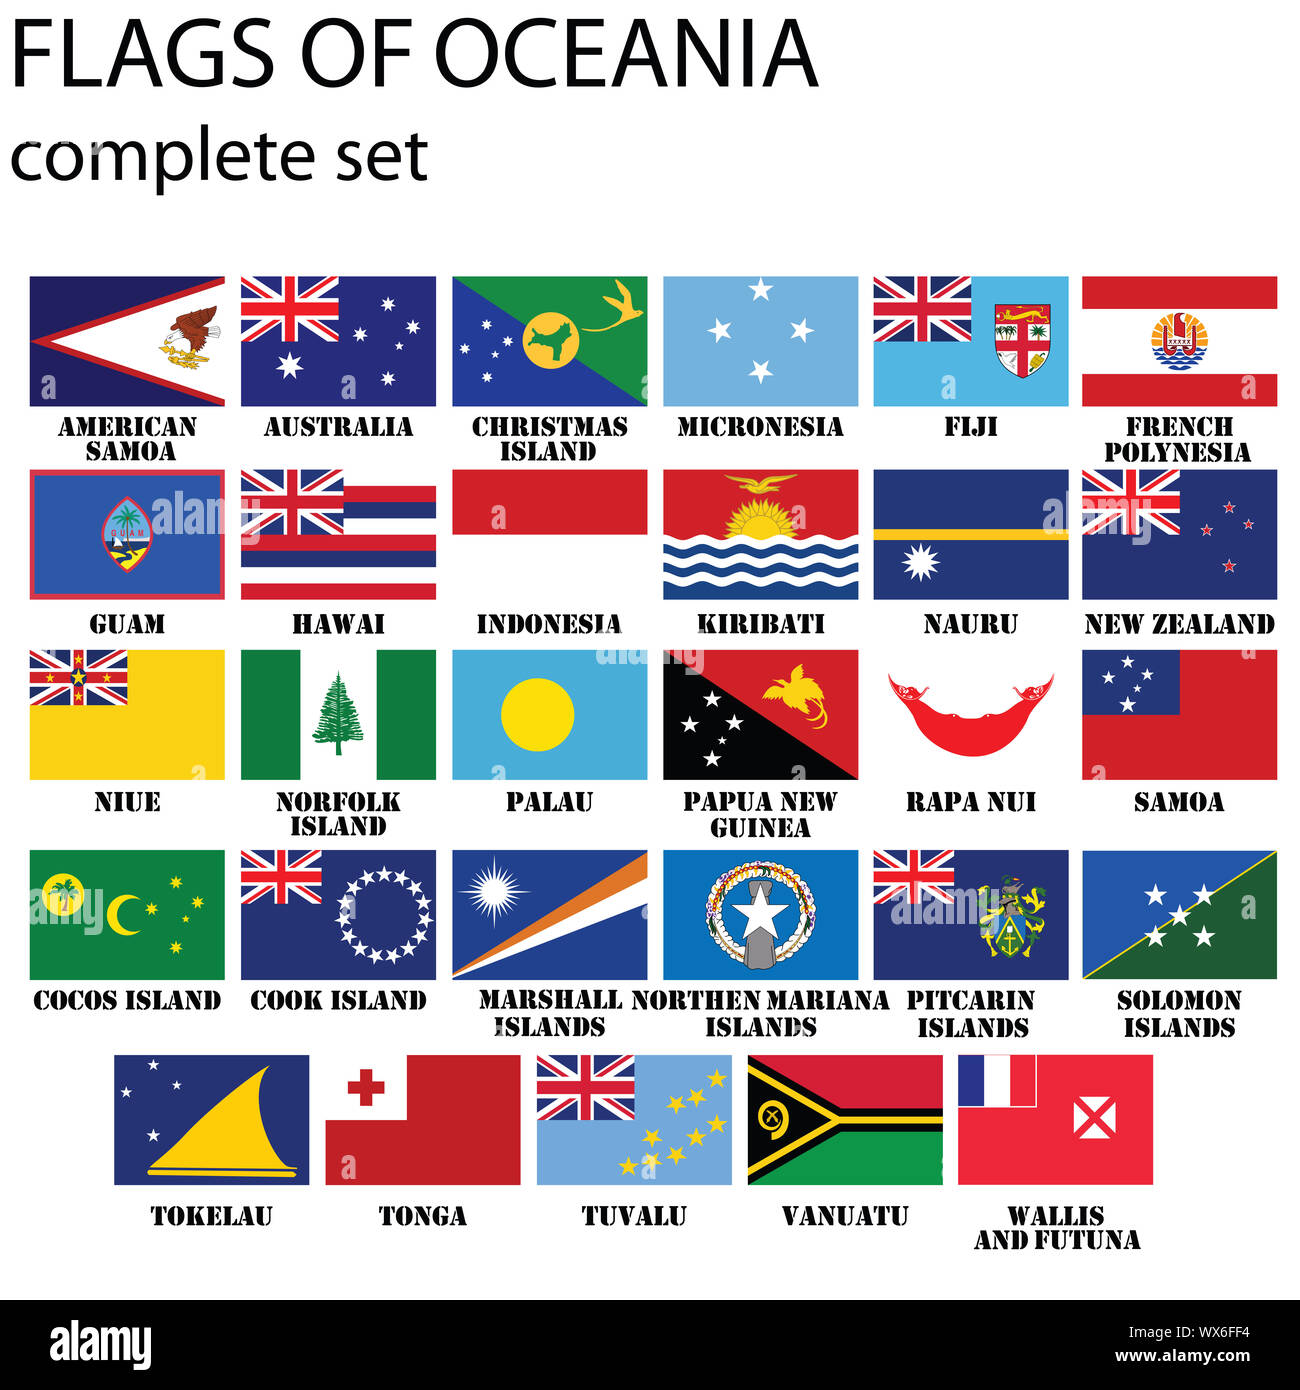 Flags of oceania hi